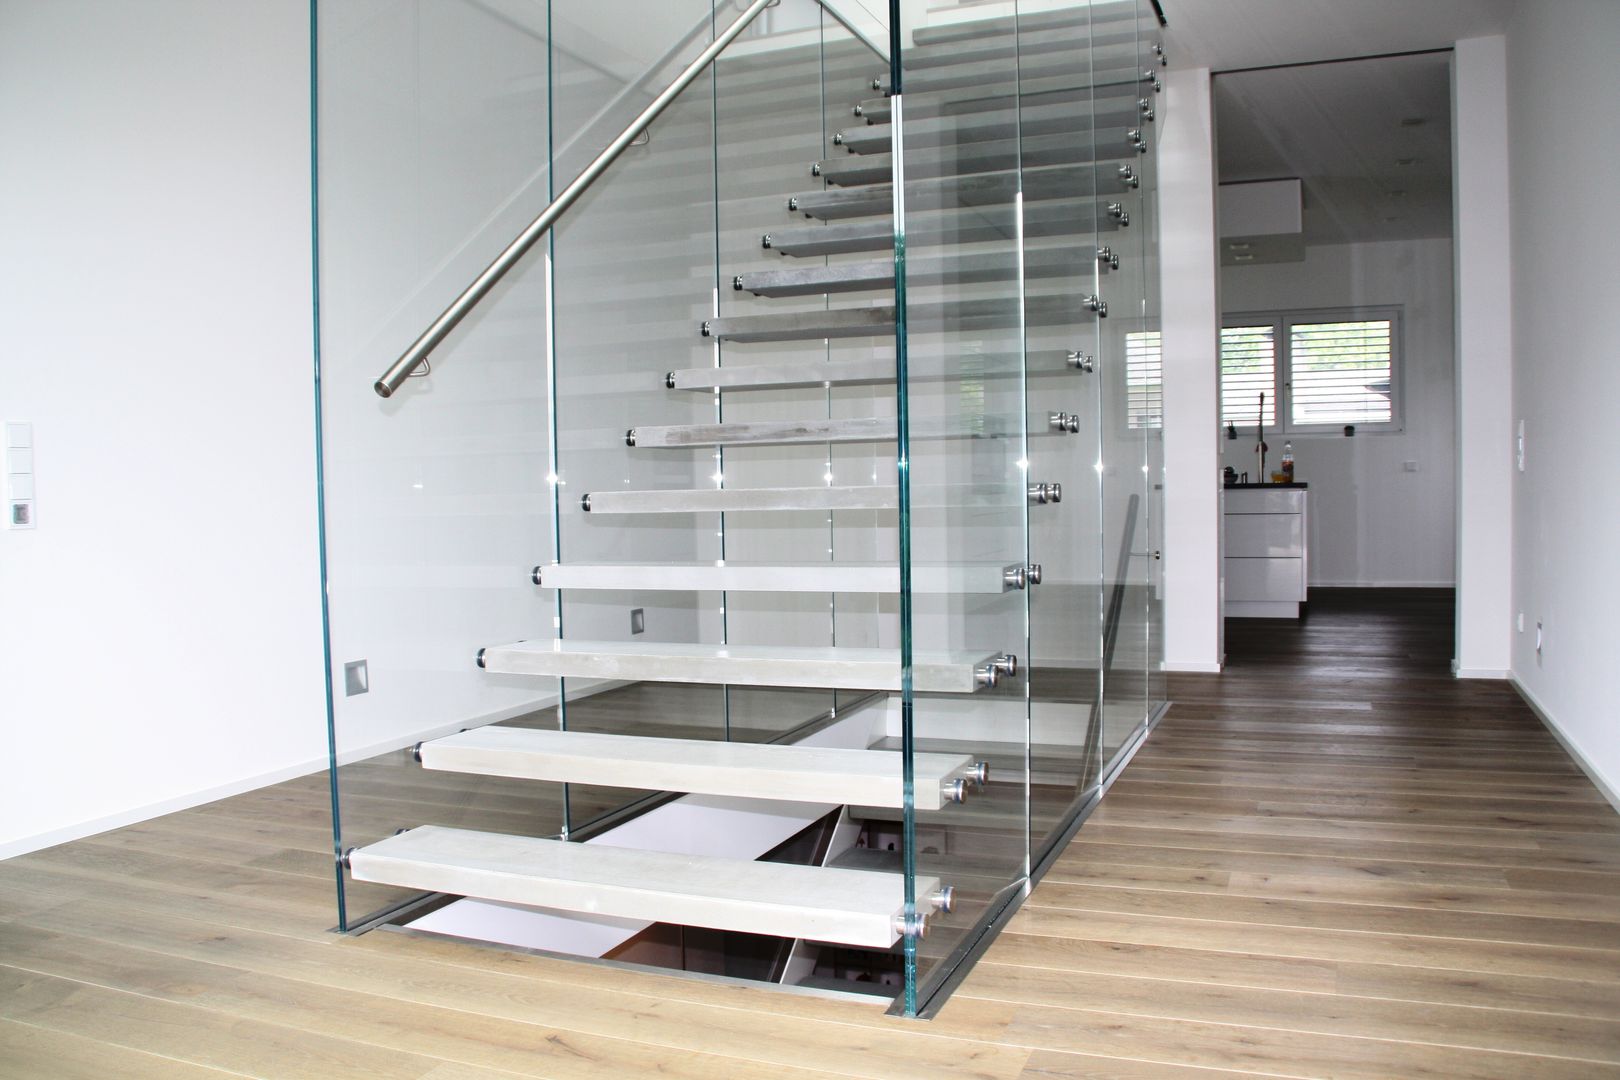 Glastragende Treppe mit Betondesignstufen, lifestyle-treppen.de lifestyle-treppen.de Modern Corridor, Hallway and Staircase Concrete